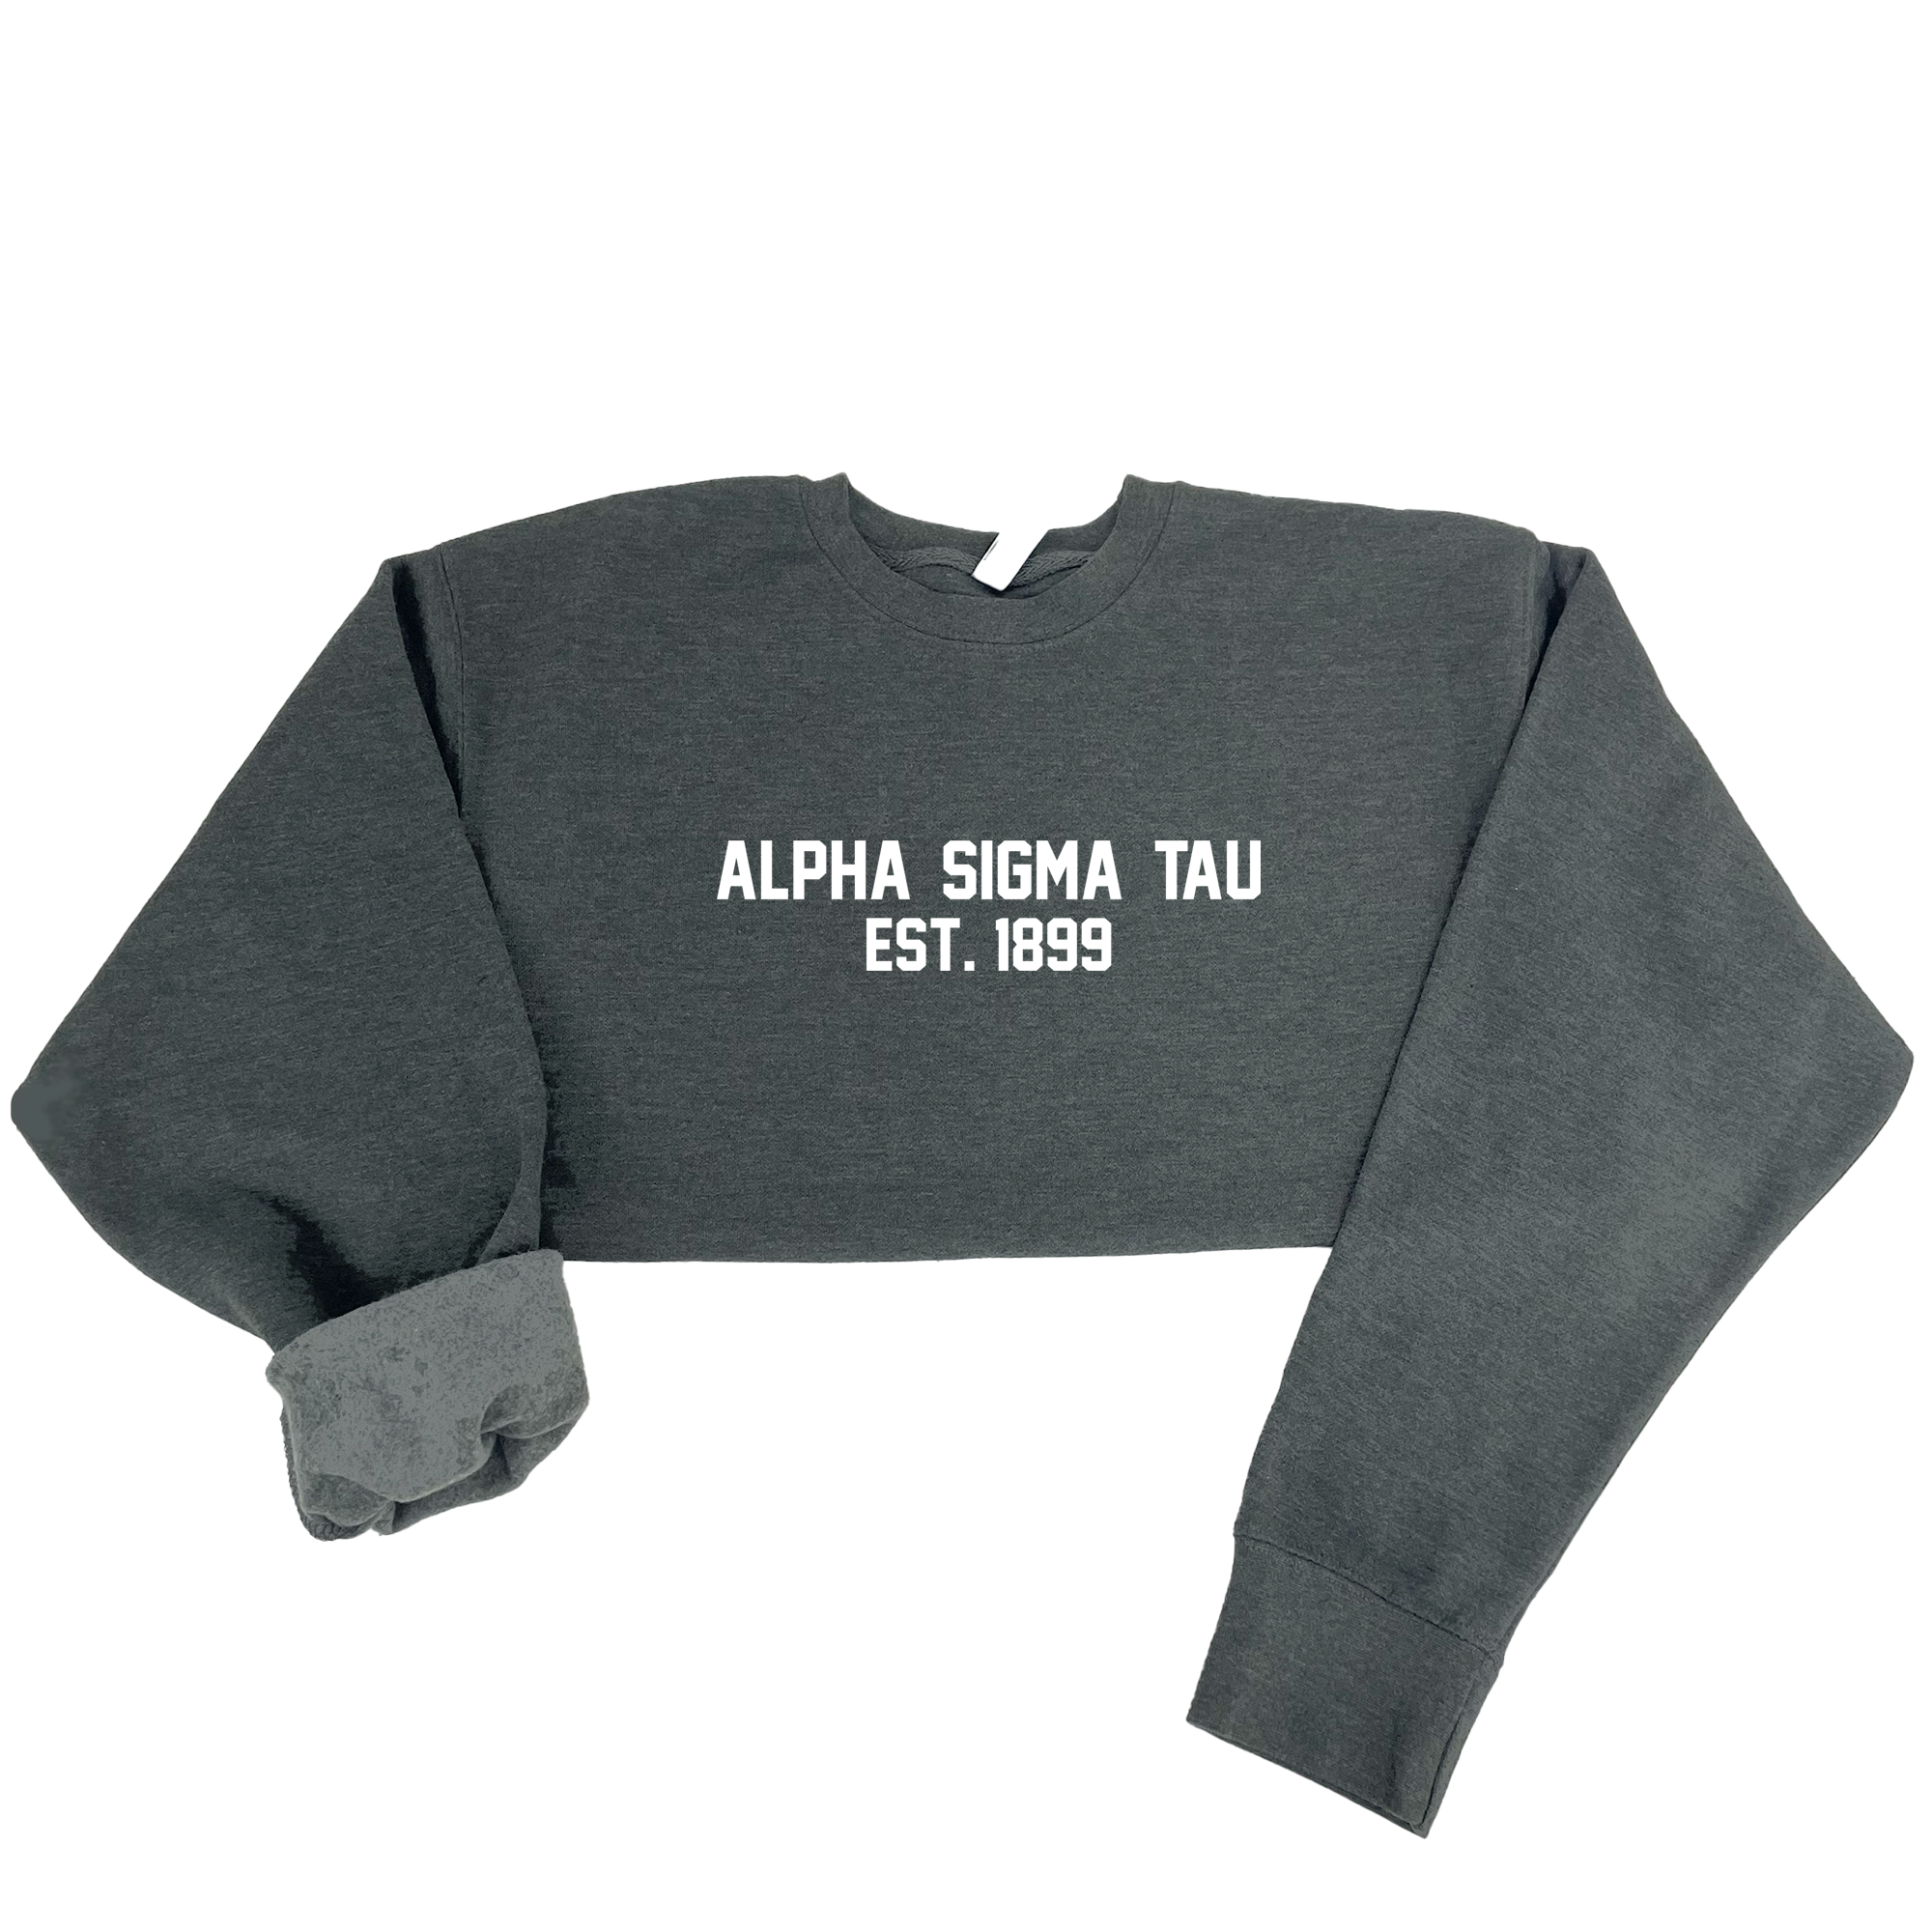 Alpha Sigma Tau Est. 1899 Sweatshirt